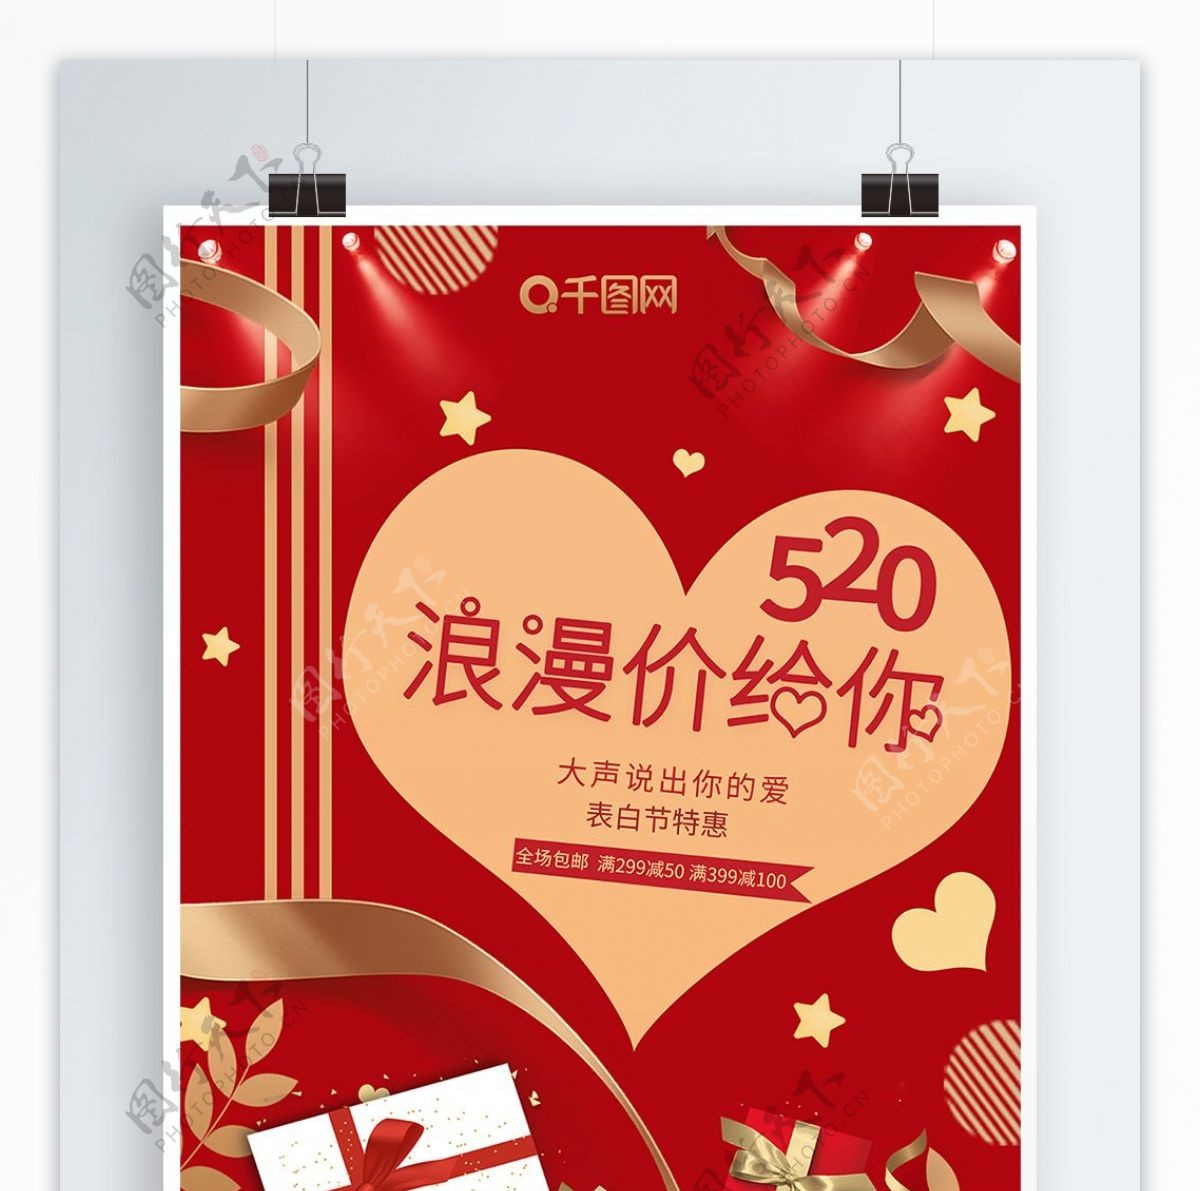 红色简约浪漫520情人节爱心通用促销海报